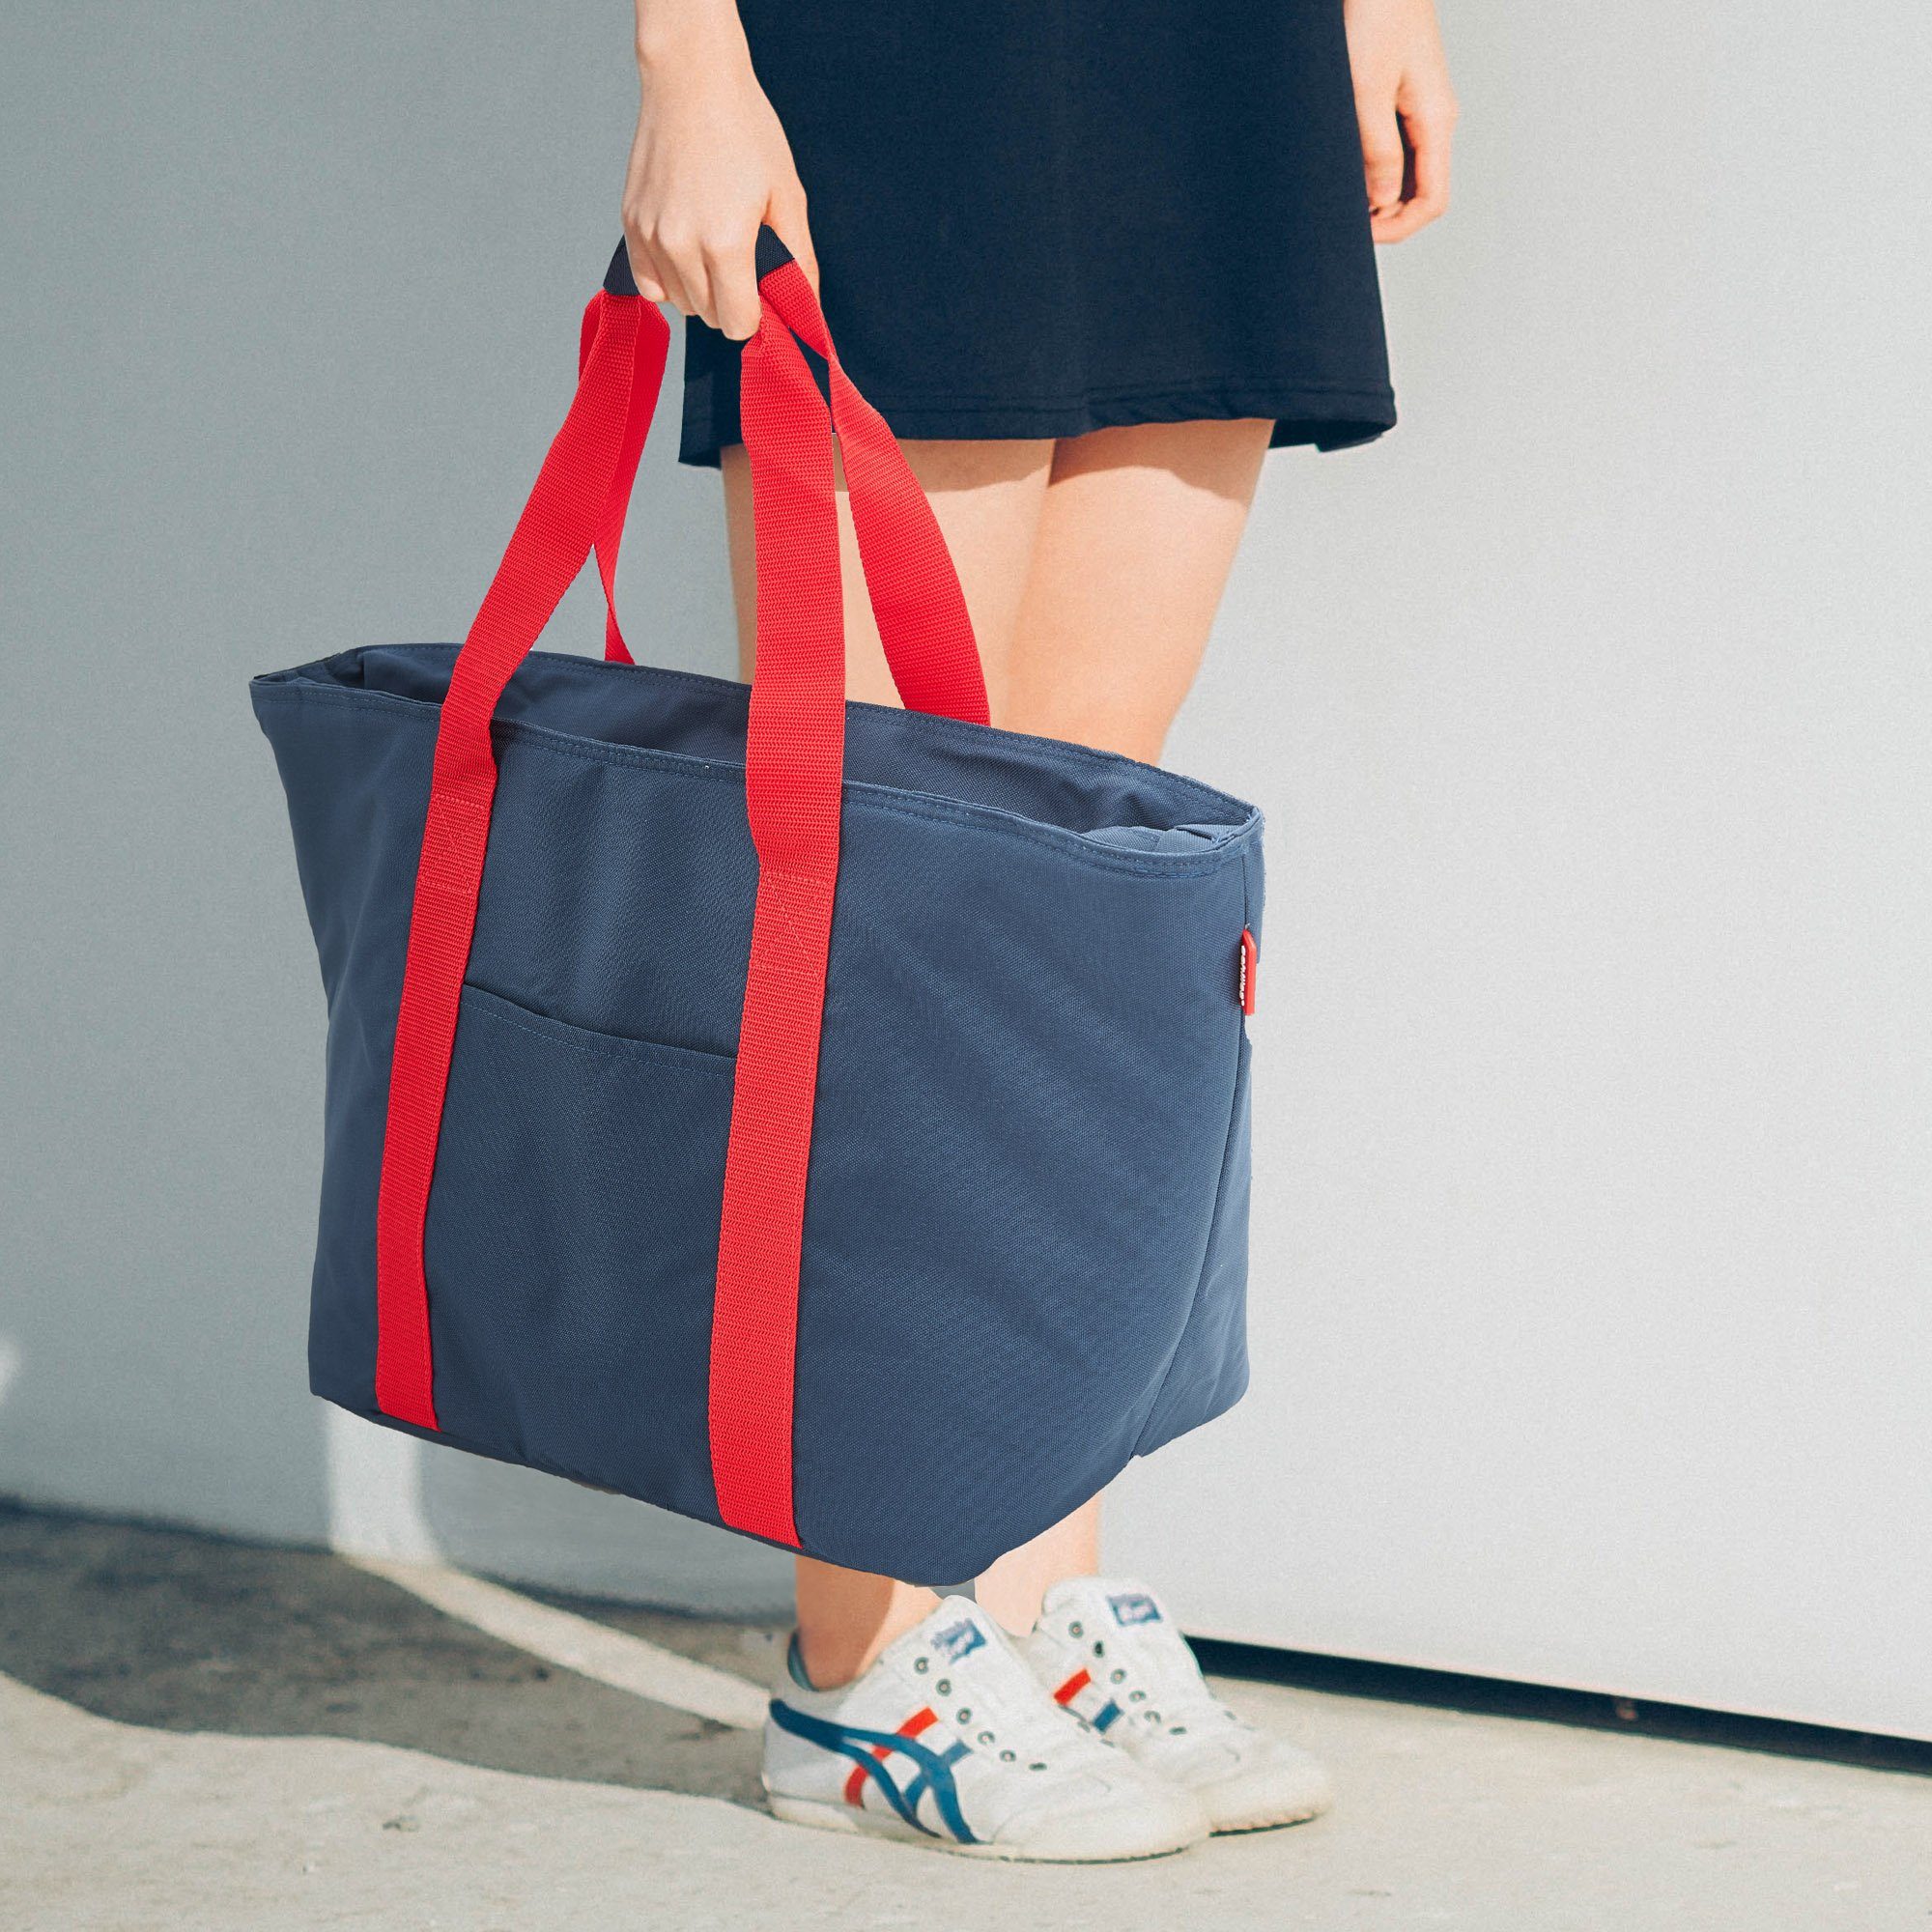 navy mit / Flaschenfächer achilles mit Kühlfunktion Shopper-Tasche rot Einkaufsshopper Freizeittasche